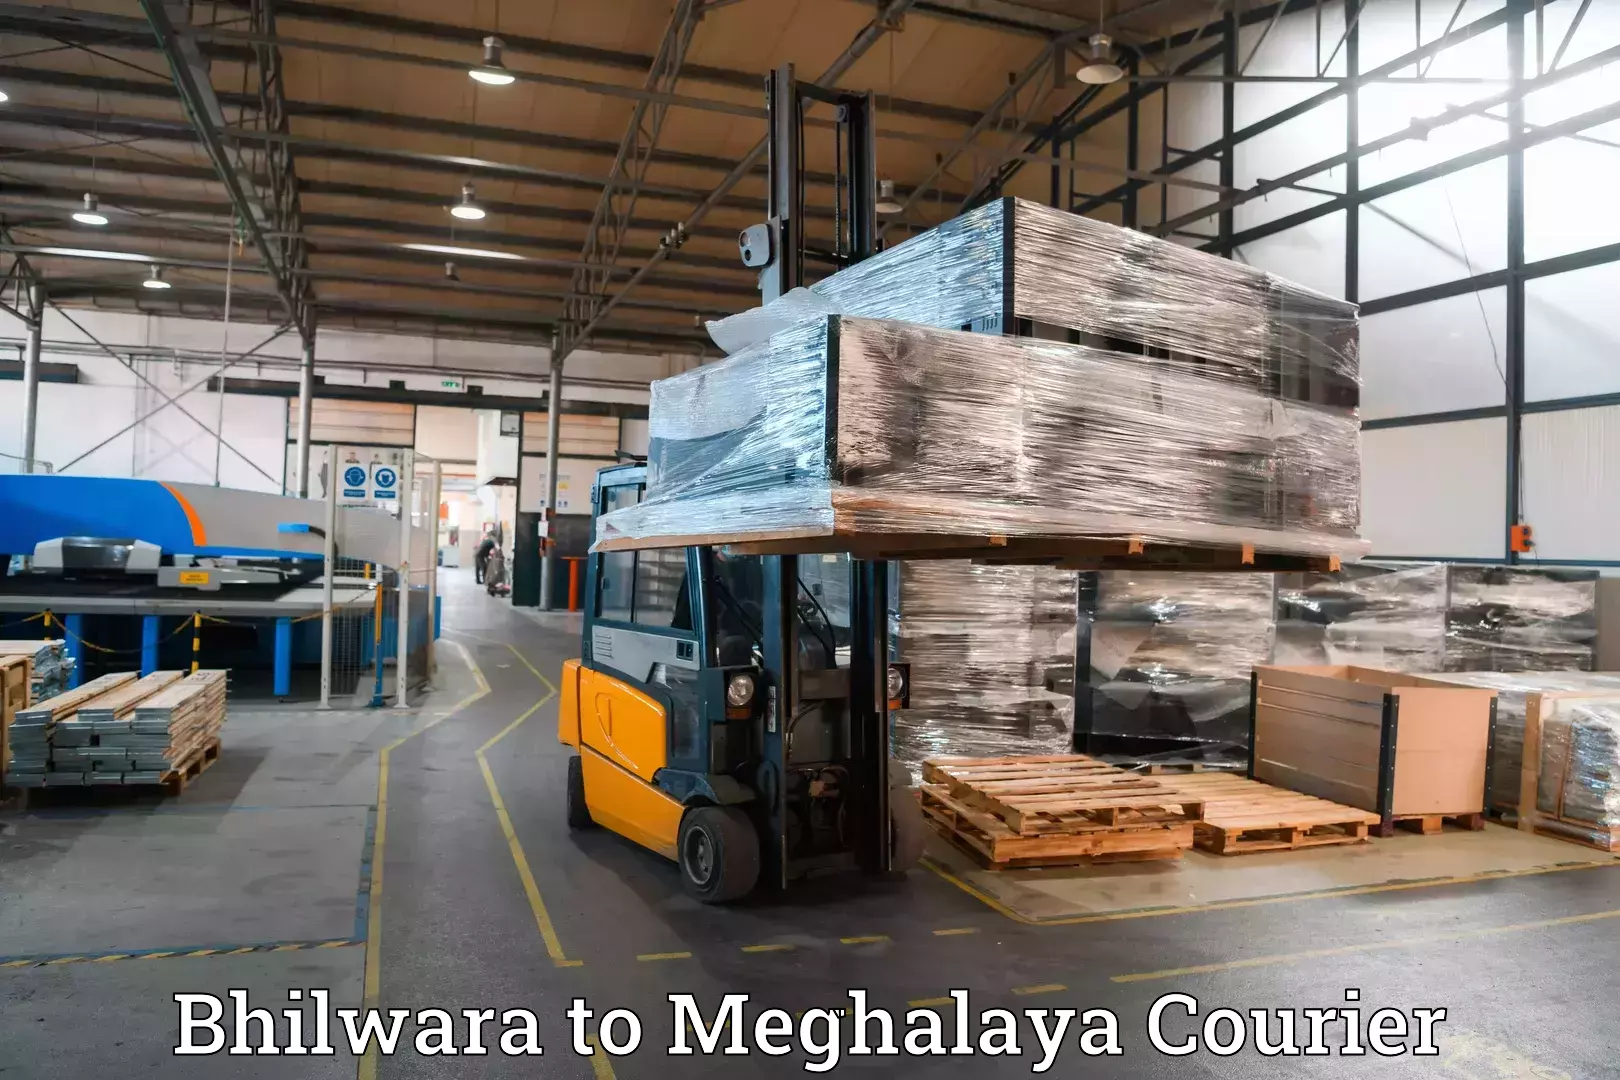 Luggage shipping service Bhilwara to Meghalaya